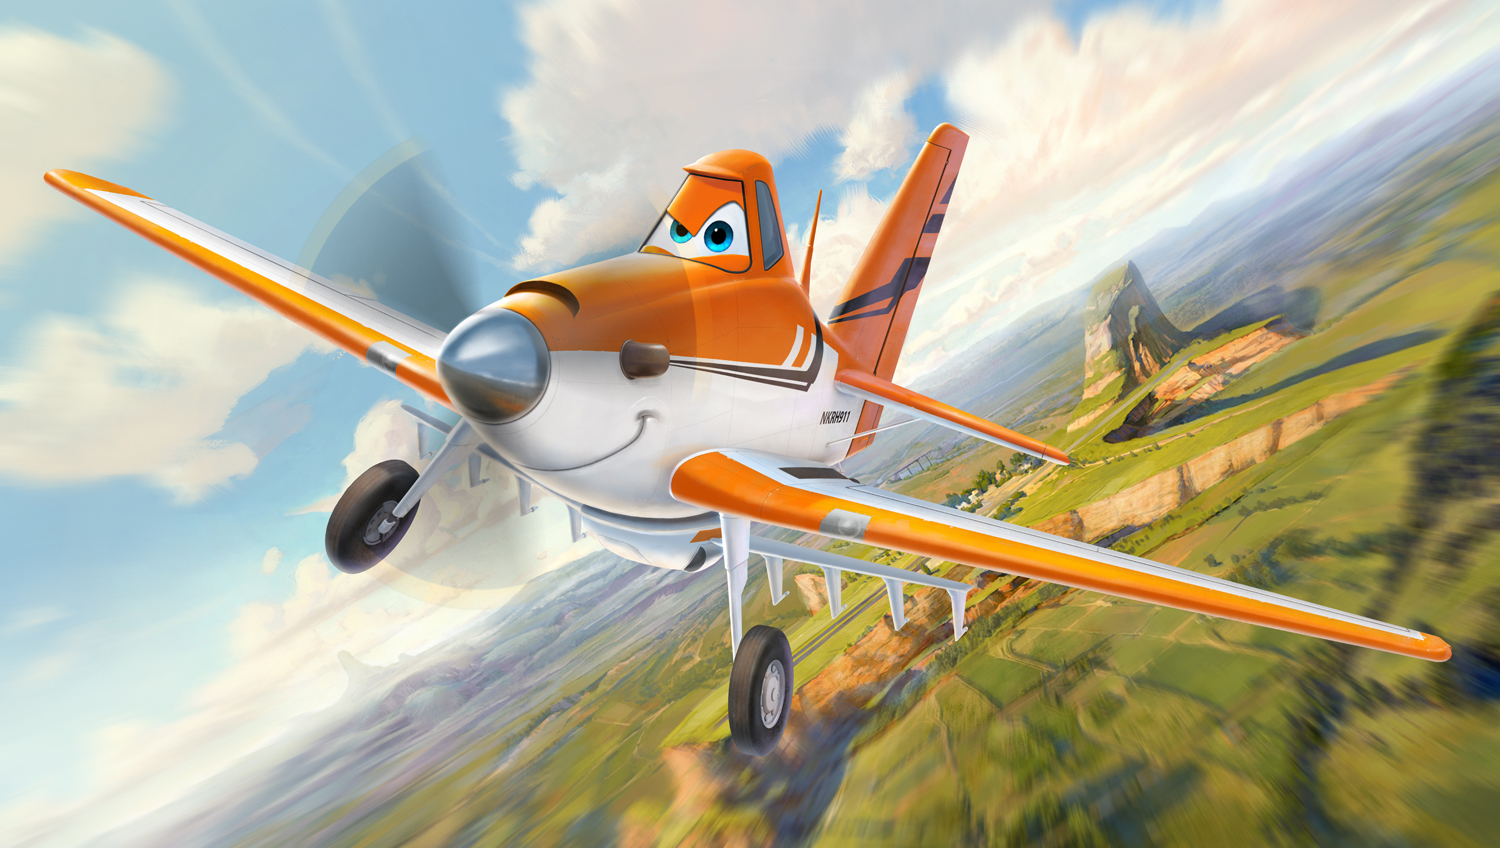 Disney-Toon-Studios-Planes